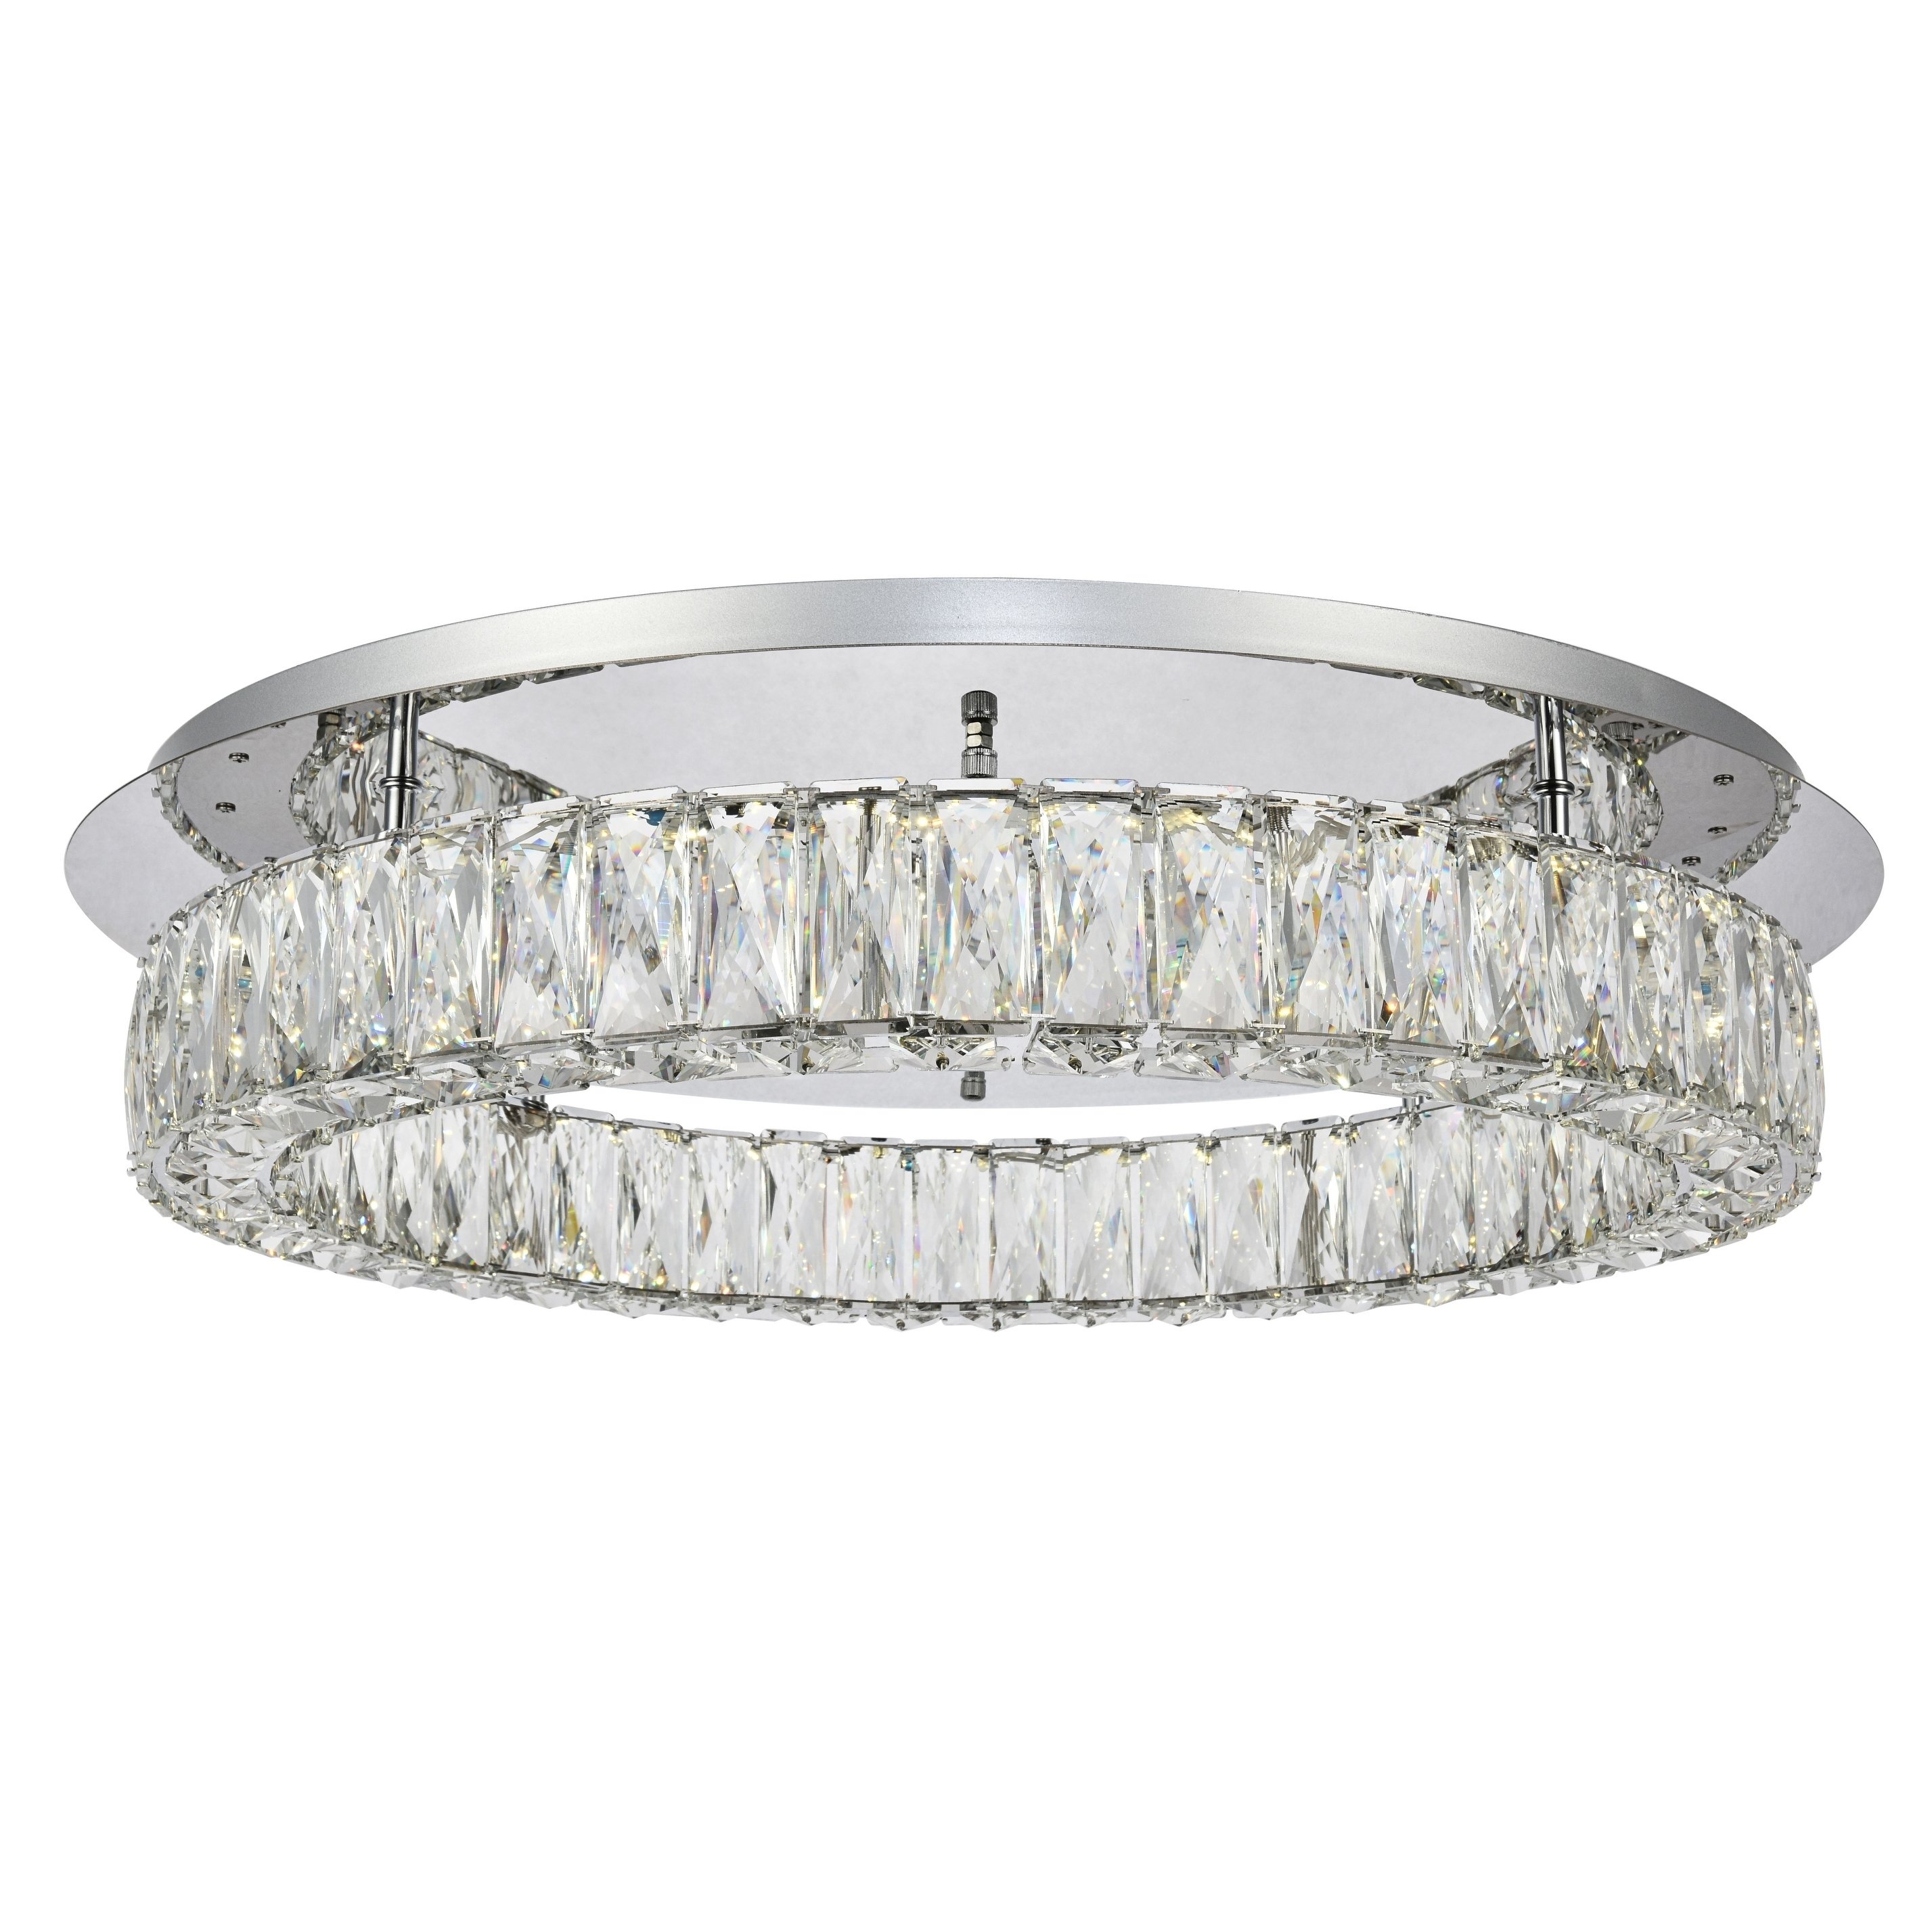 Ein-Ring Monroe LED-Kristall-Einbauleuchte mit 65 cm Durchmesser